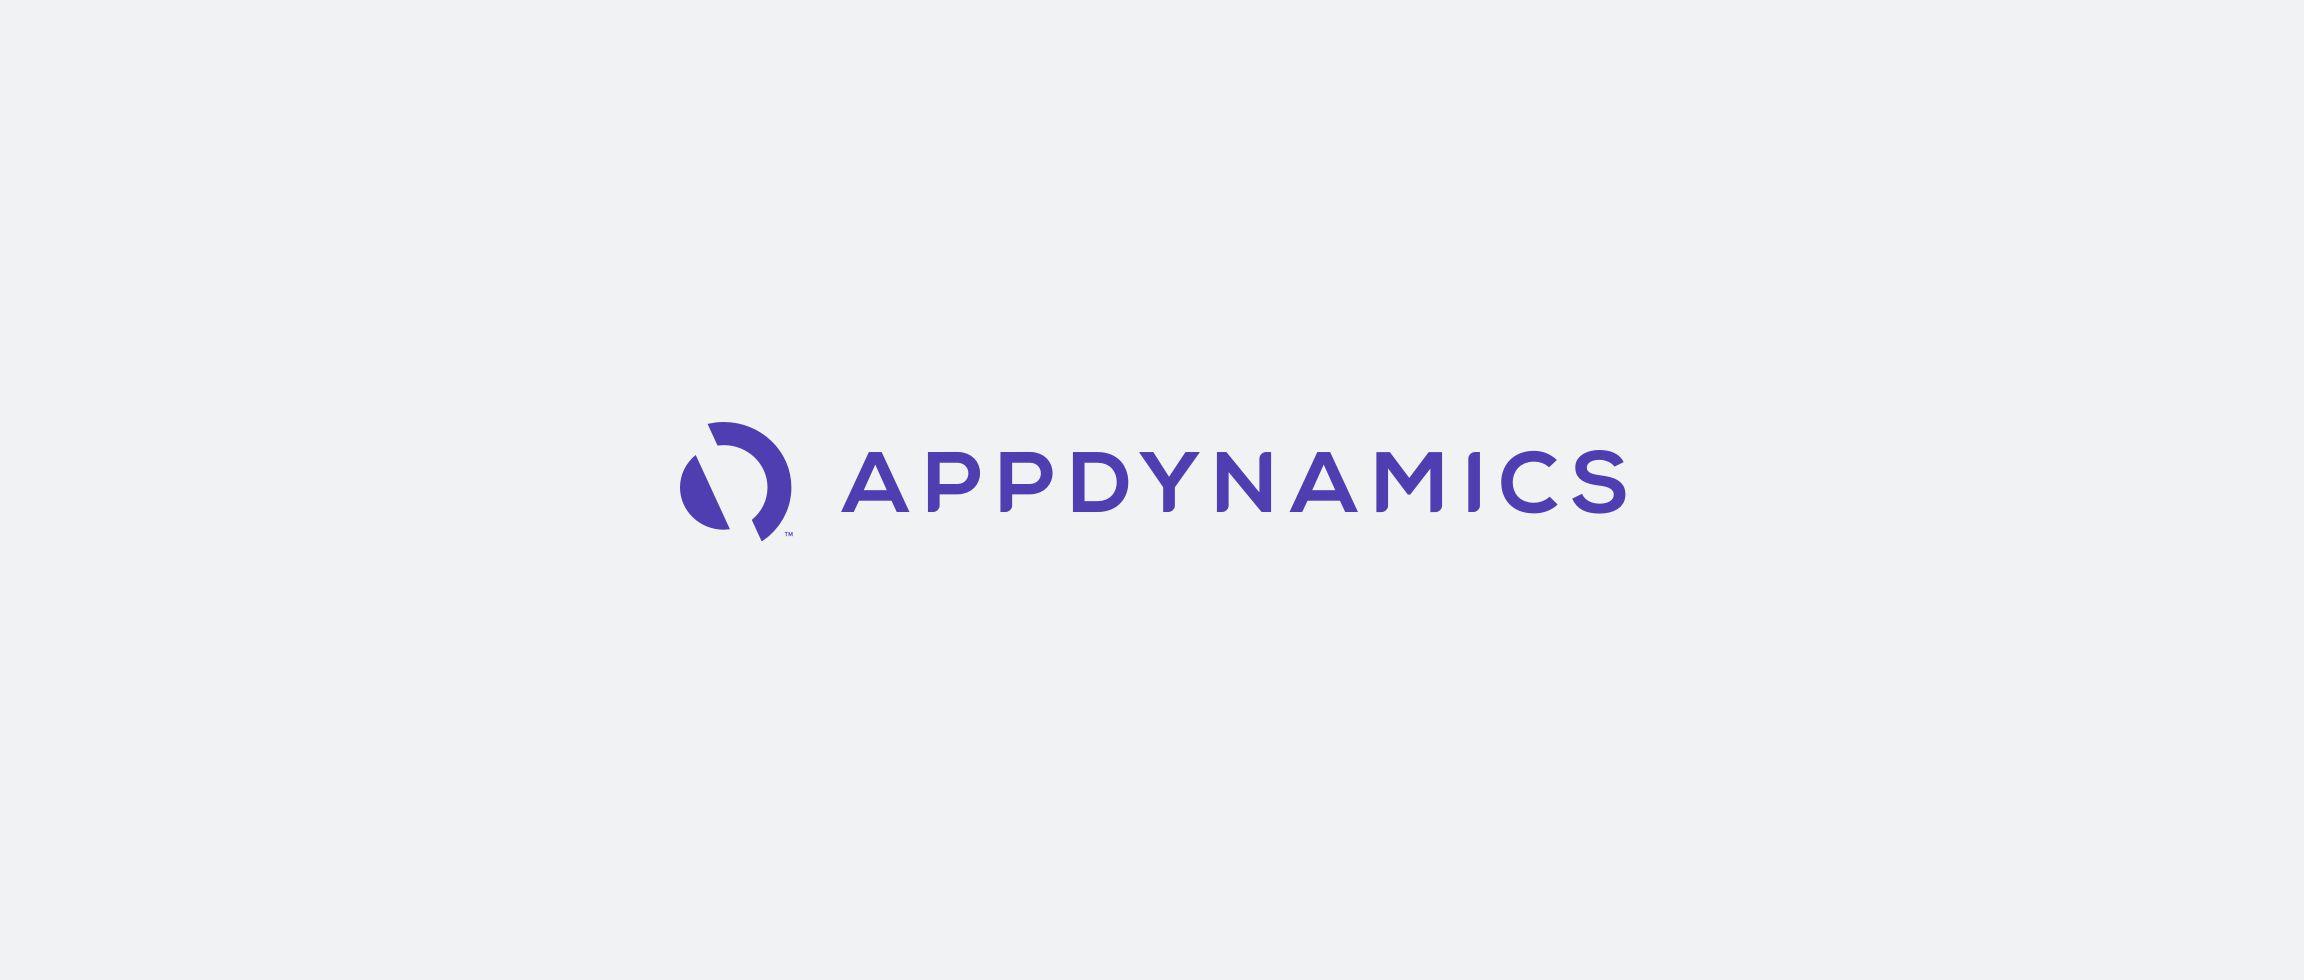 AppDynamics Logo - Kallan & Co - AppDynamics